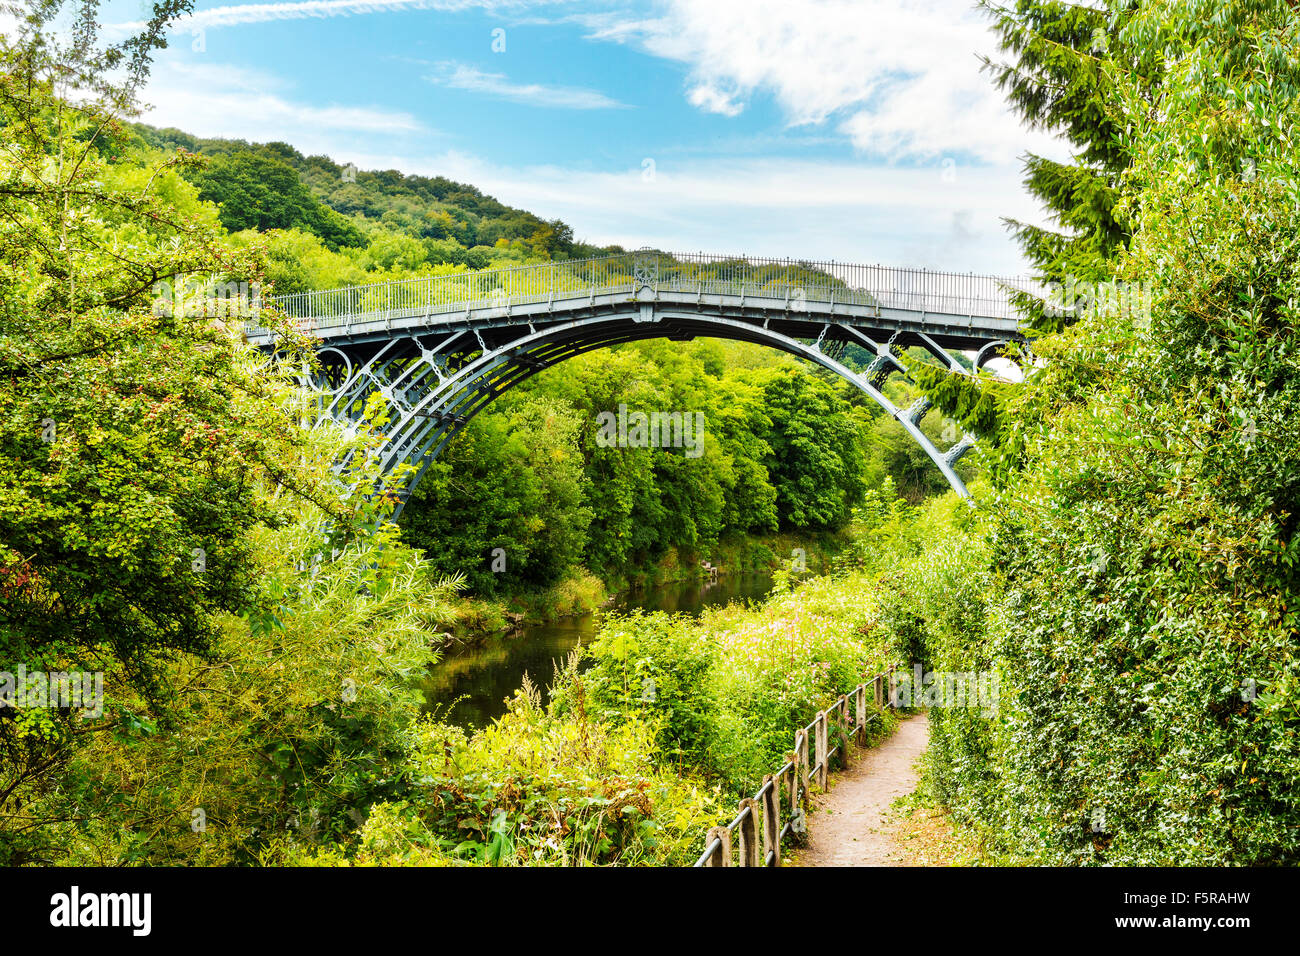 Le pont de fer sur la rivière Severn, Ironbridge Gorge, Shropshire, England, UK. Conçu par Thomas Farnolls Pritchard Banque D'Images